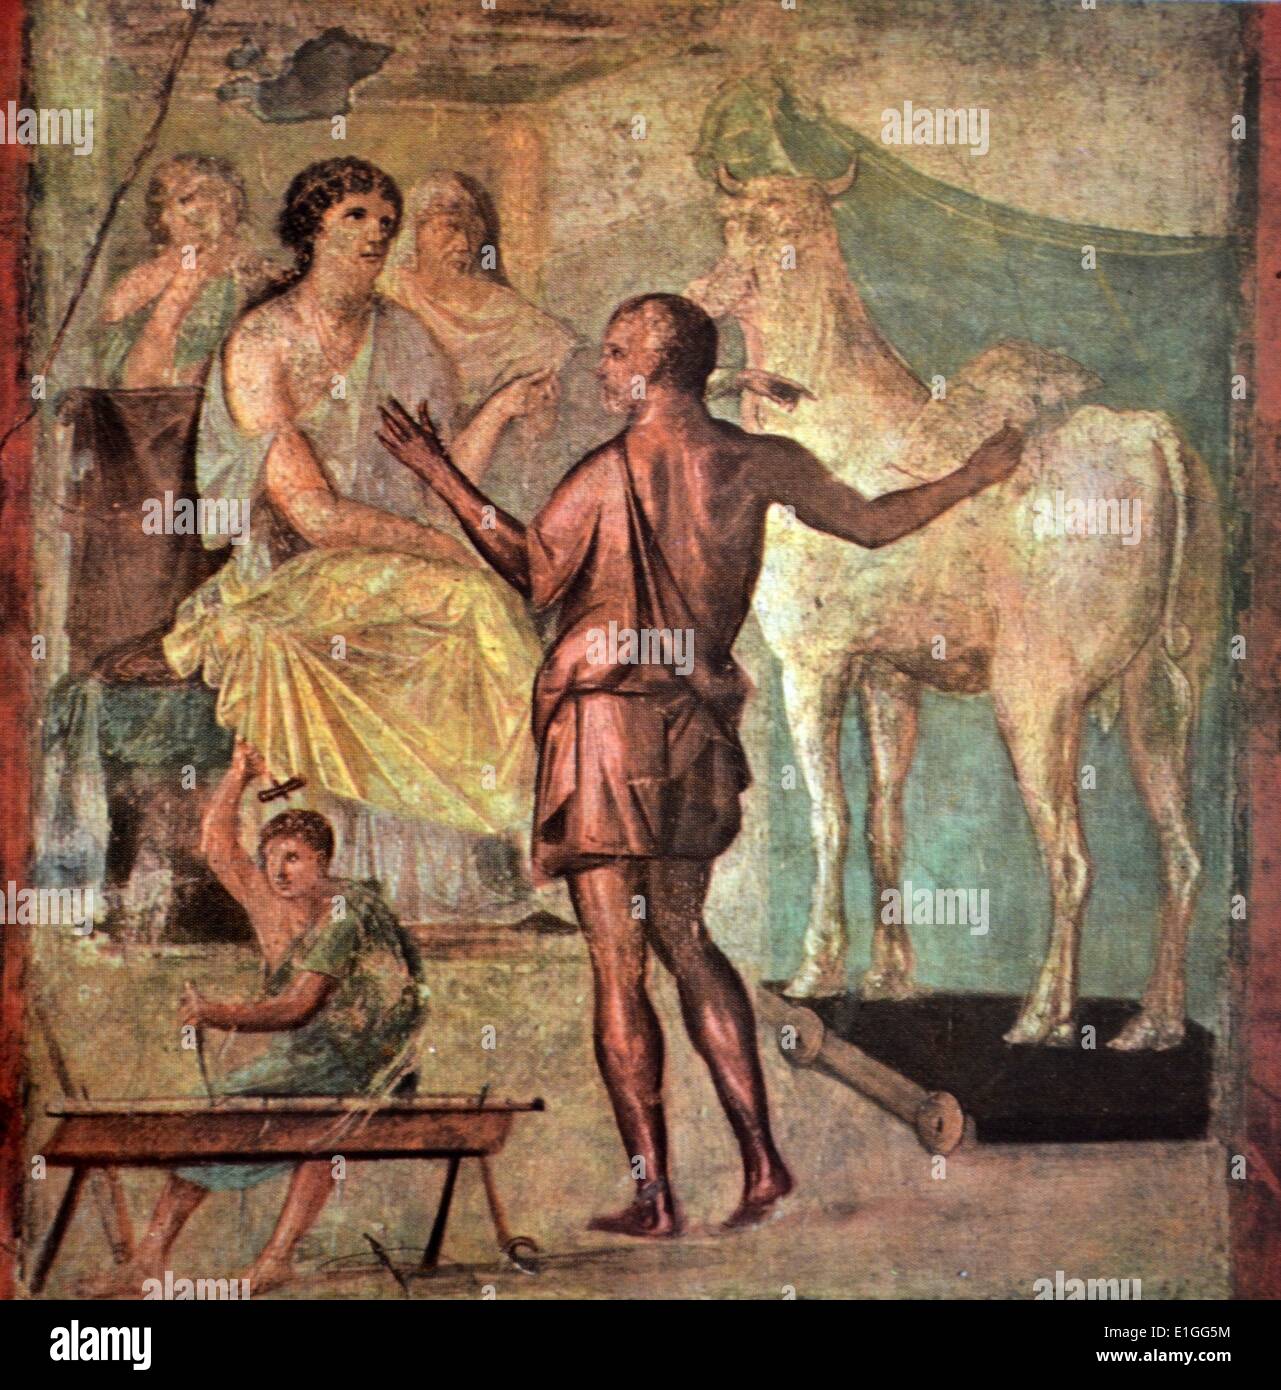 Pintura representando parte del mito de minotauro, que aparece en la Meta-morphoses; Deadalus, el inventor, presenta Pasiphaë de bronce con una vaca - un dispositivo que le permita satisfacer su pasión de ONU-natural de un toro. Foto de stock